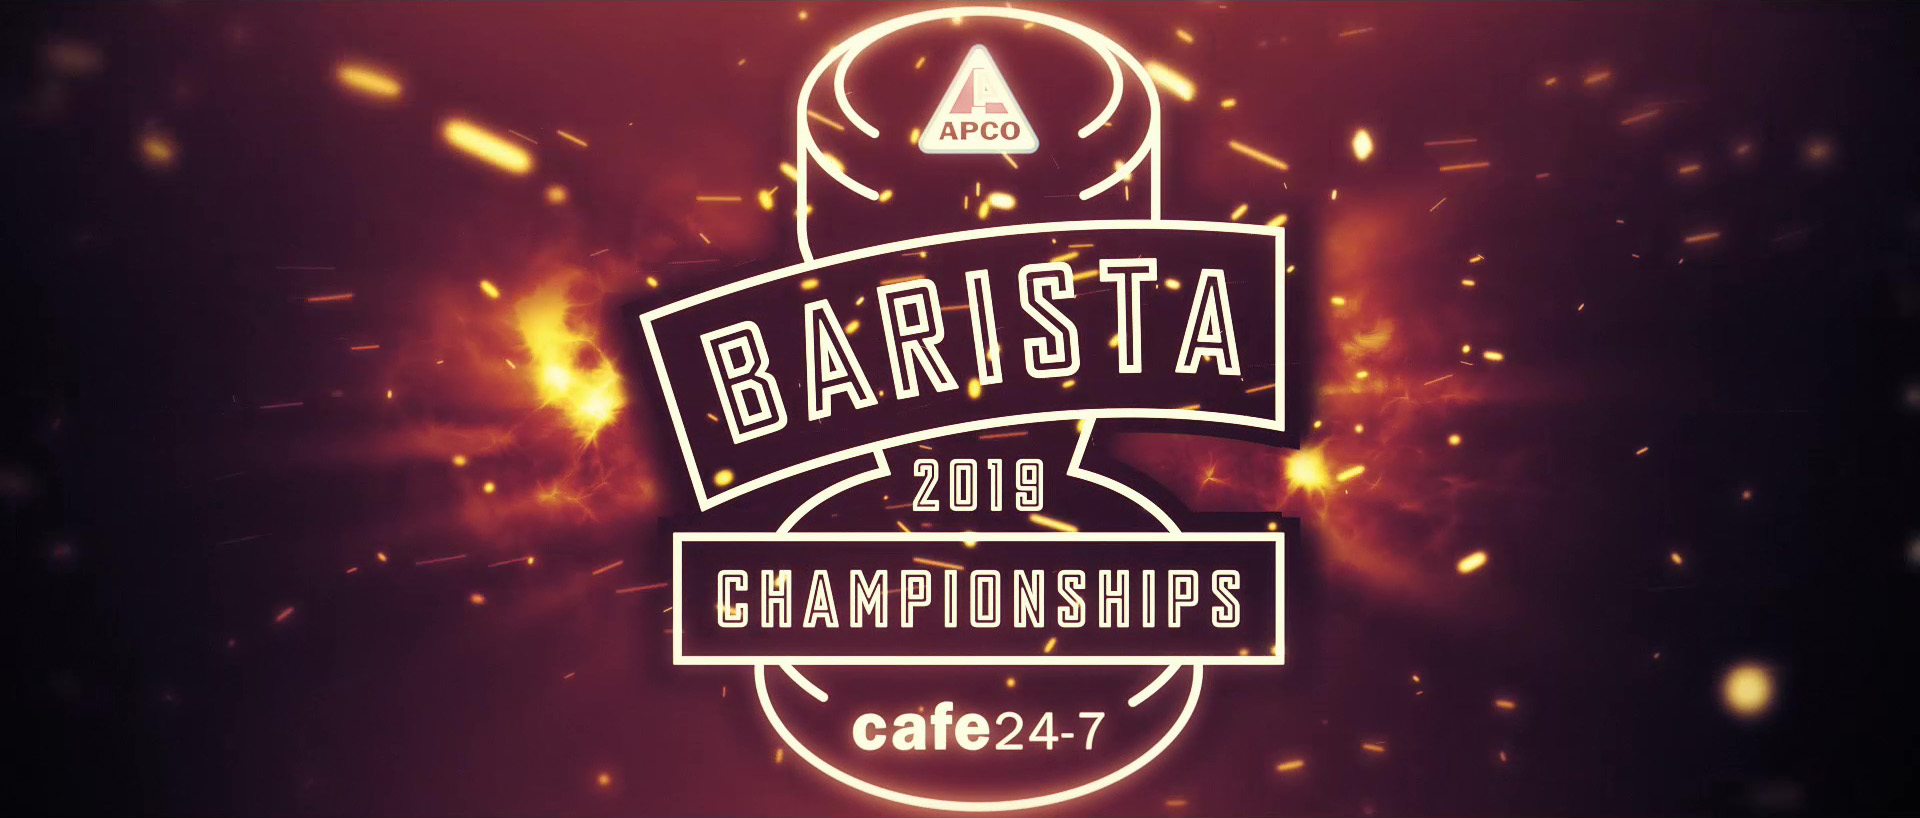 APCO Barista Championships